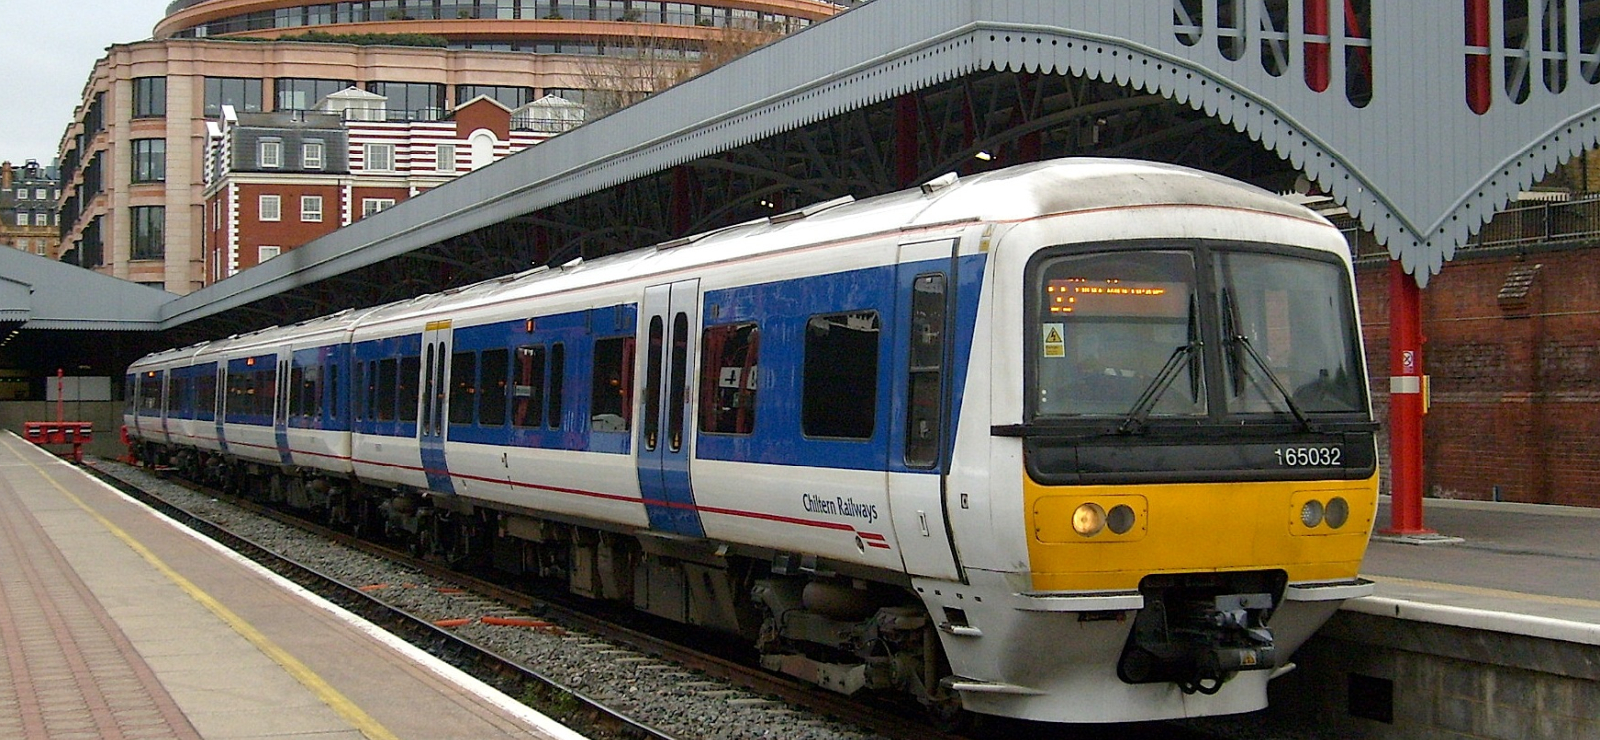 Chiltern Railways 165032 in March 2008 at London-Marylebone